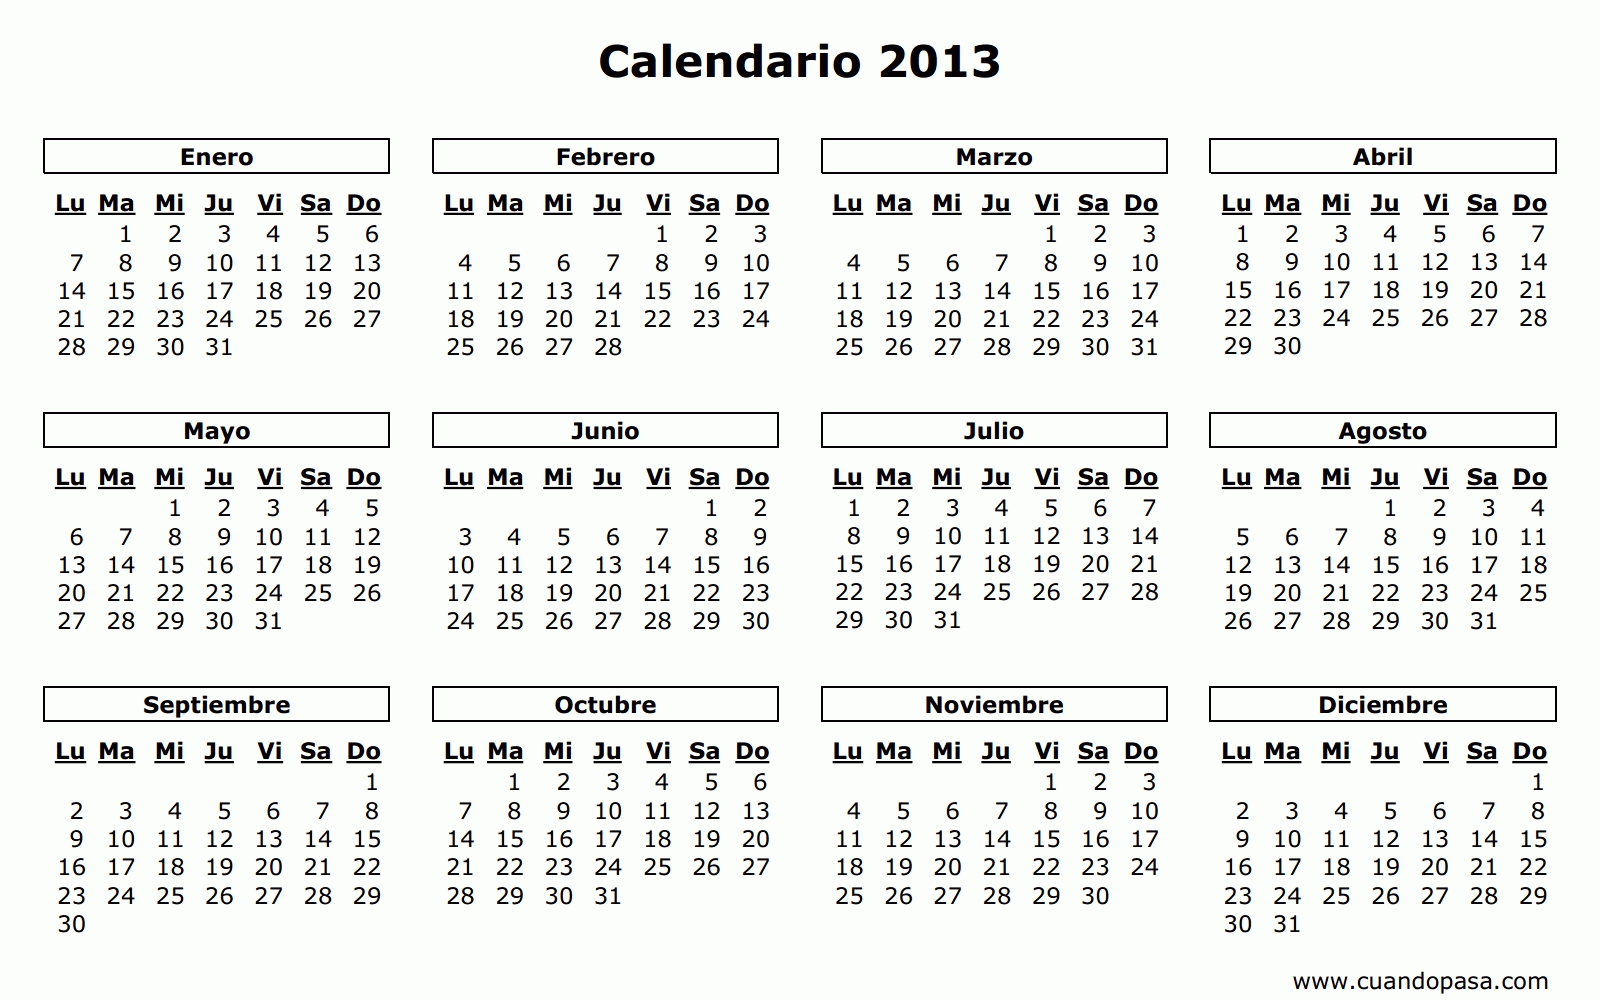 Calendario 2013 pertaining to Calendrio 2013 Para Imprimir Gratis